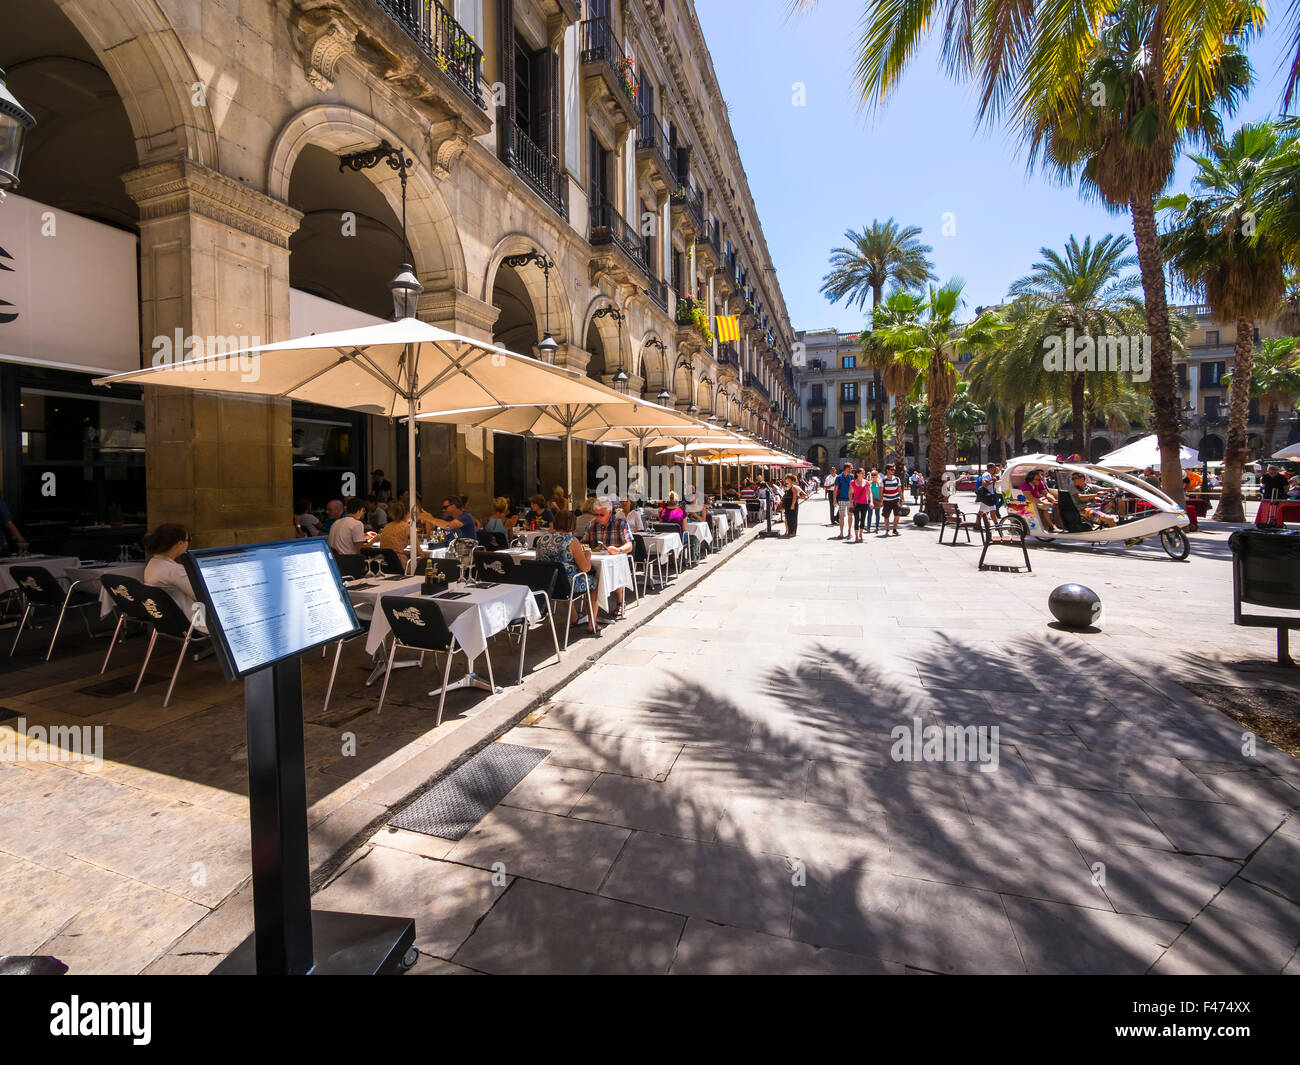 Restaurant, Placa Reial, Gothic Quarter, Barcelona, Catalonia, Spain Stock Photo